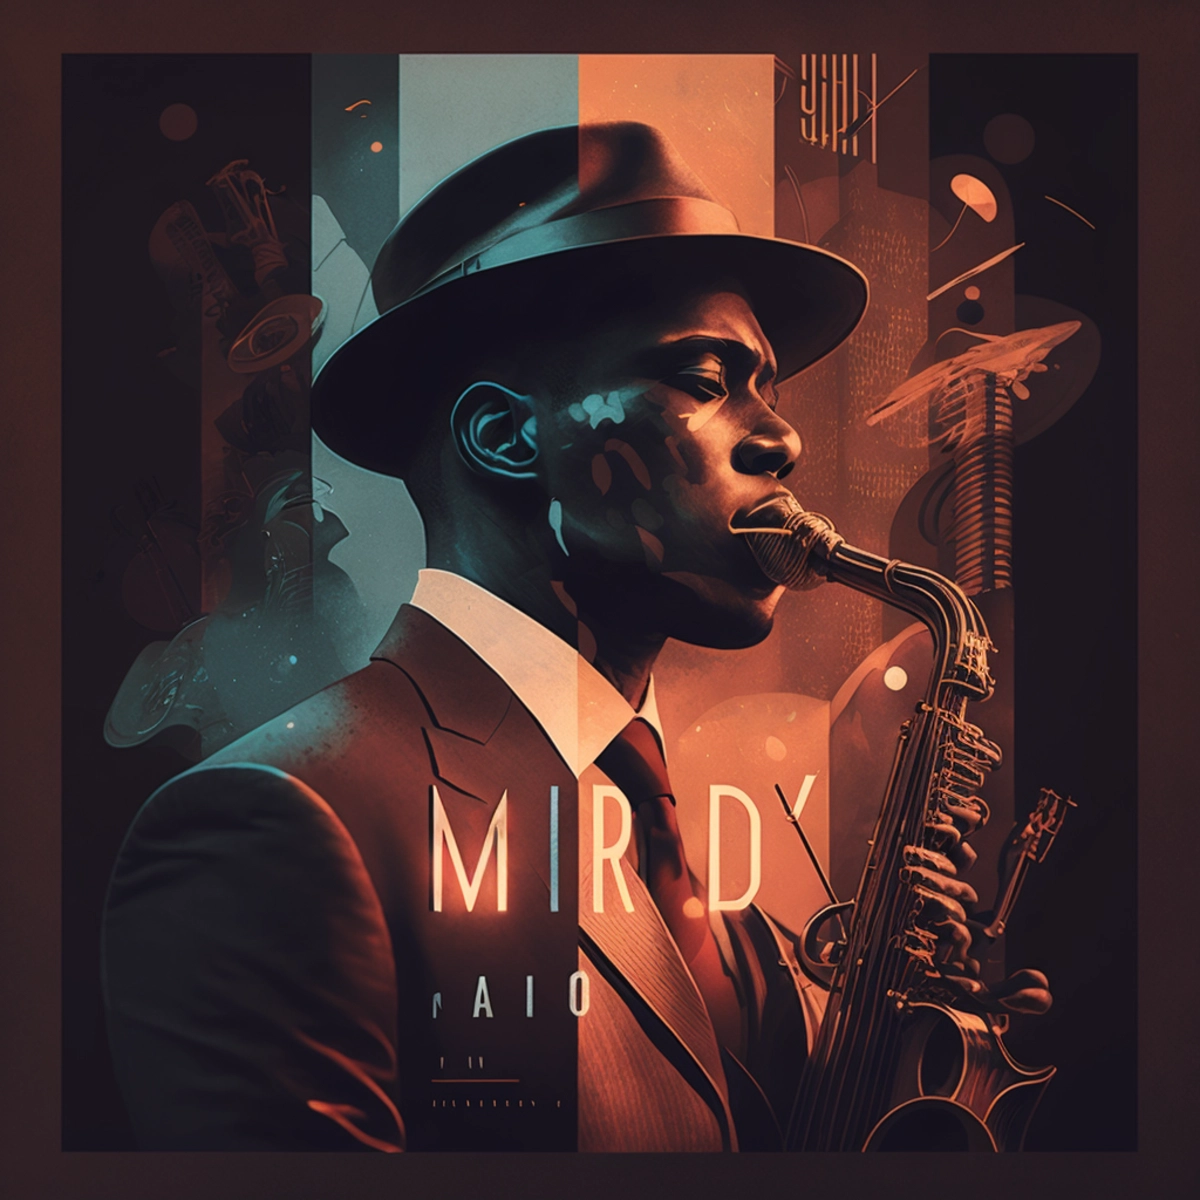 Обложка альбома в винтажном стиле с изображением джазового музыканта